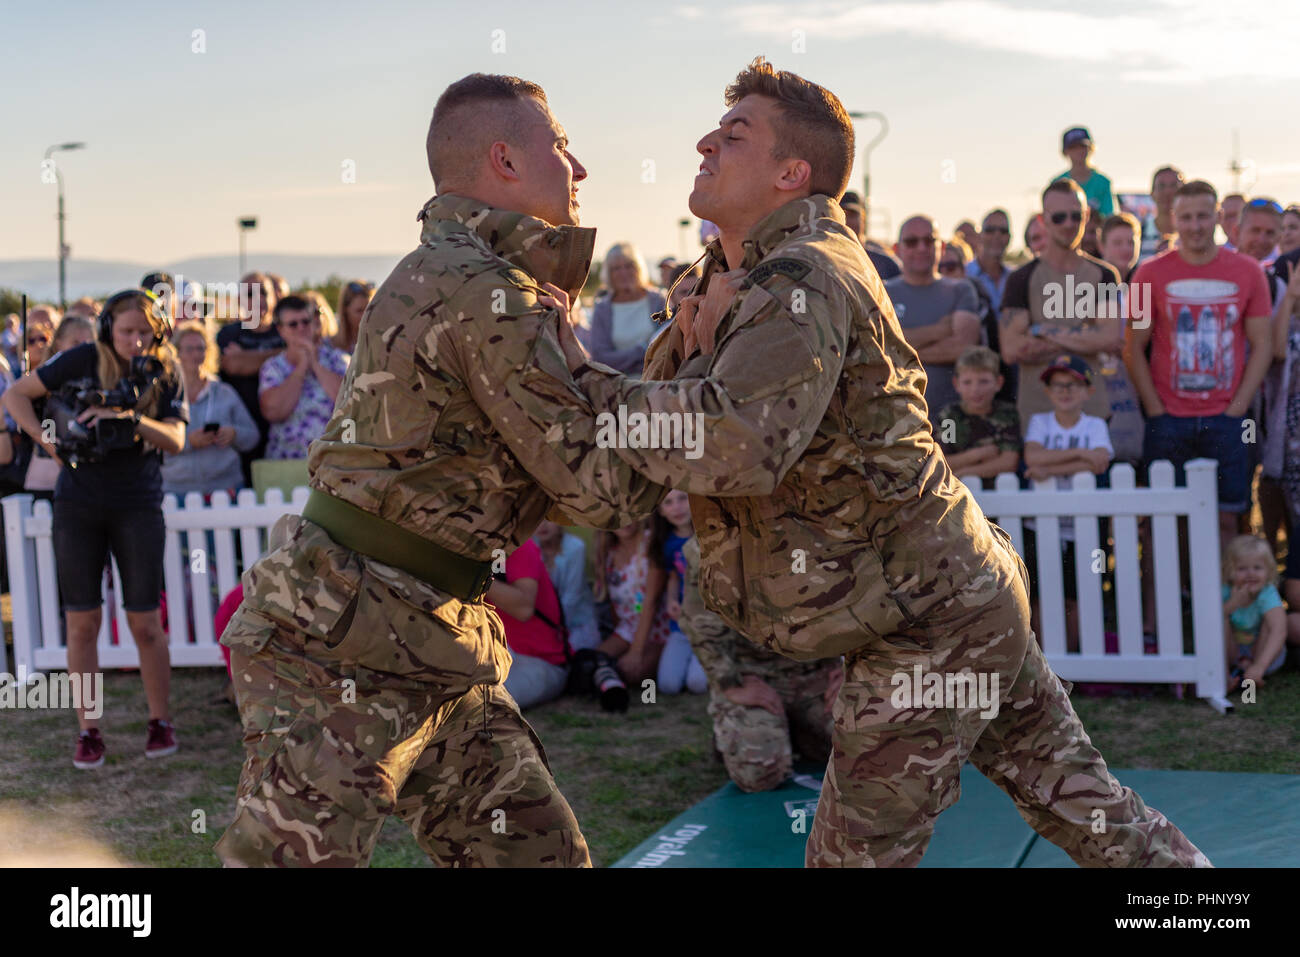 Britische Armee unbewaffneten Kampfes display Team auf eine kämpfende Show für Massen an der Bournemouth Air Festival, Dorset, Großbritannien, 2018. Stockfoto